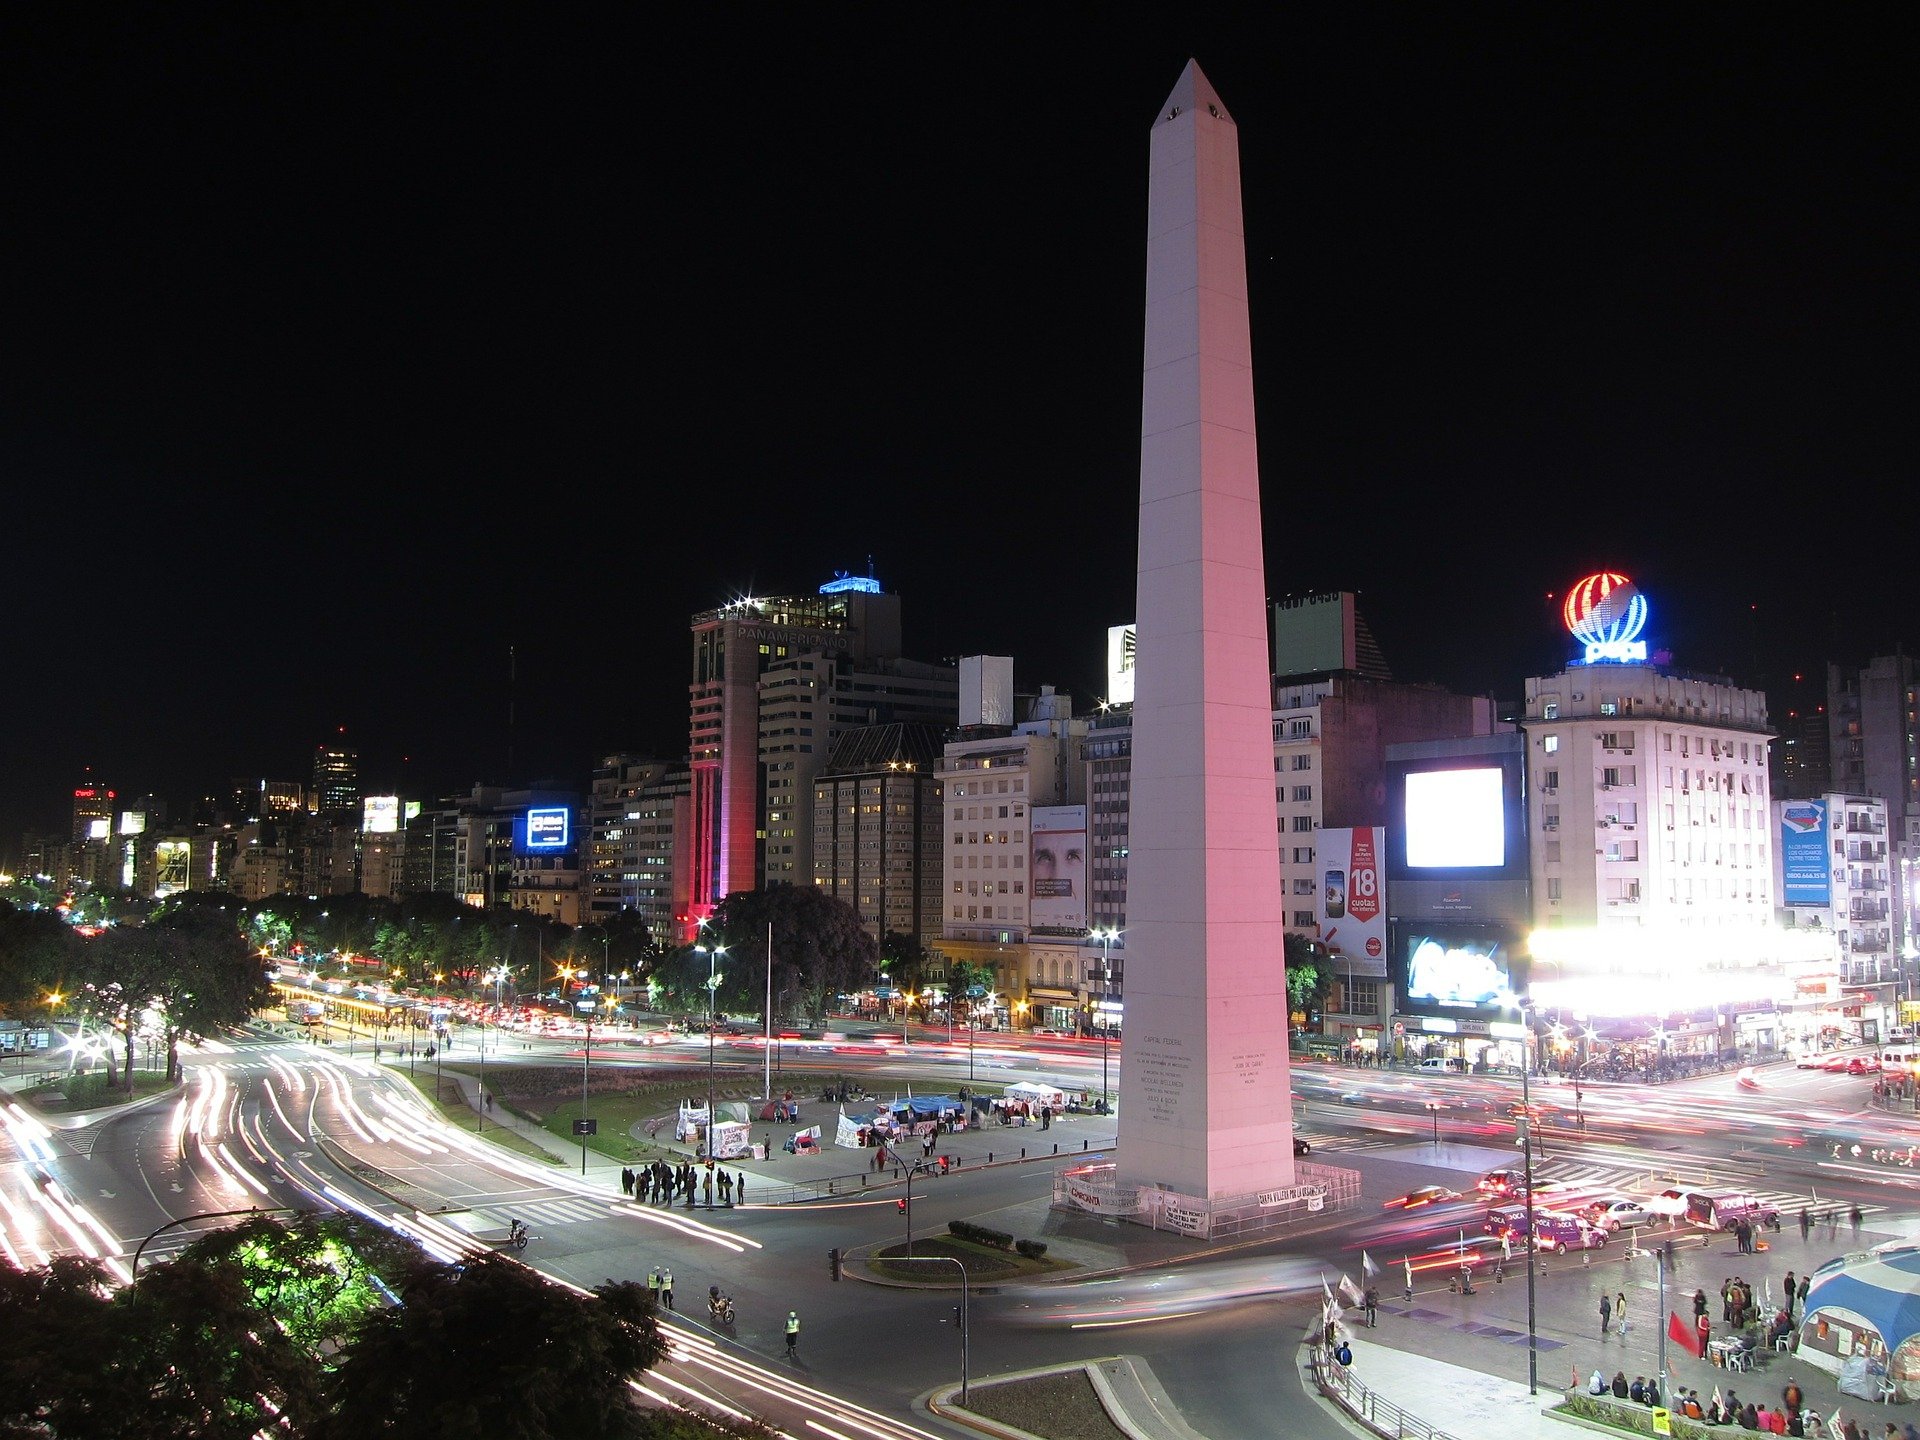 Buenos Aires bate novo recorde e tem a noite mais quente da história